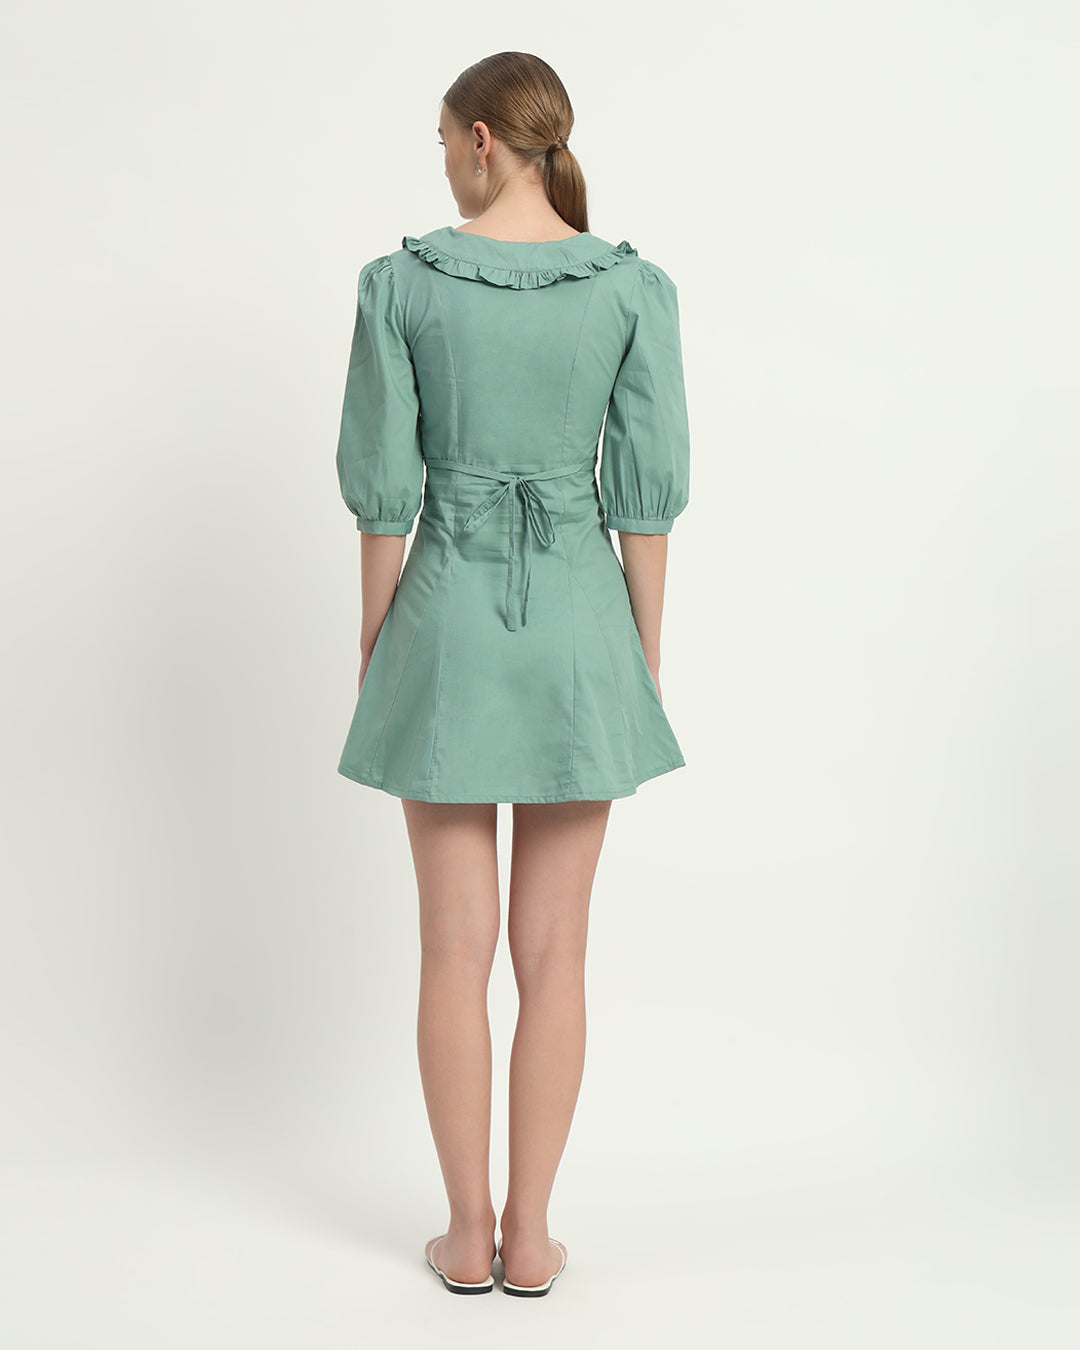 The Mint Isabela Cotton Dress